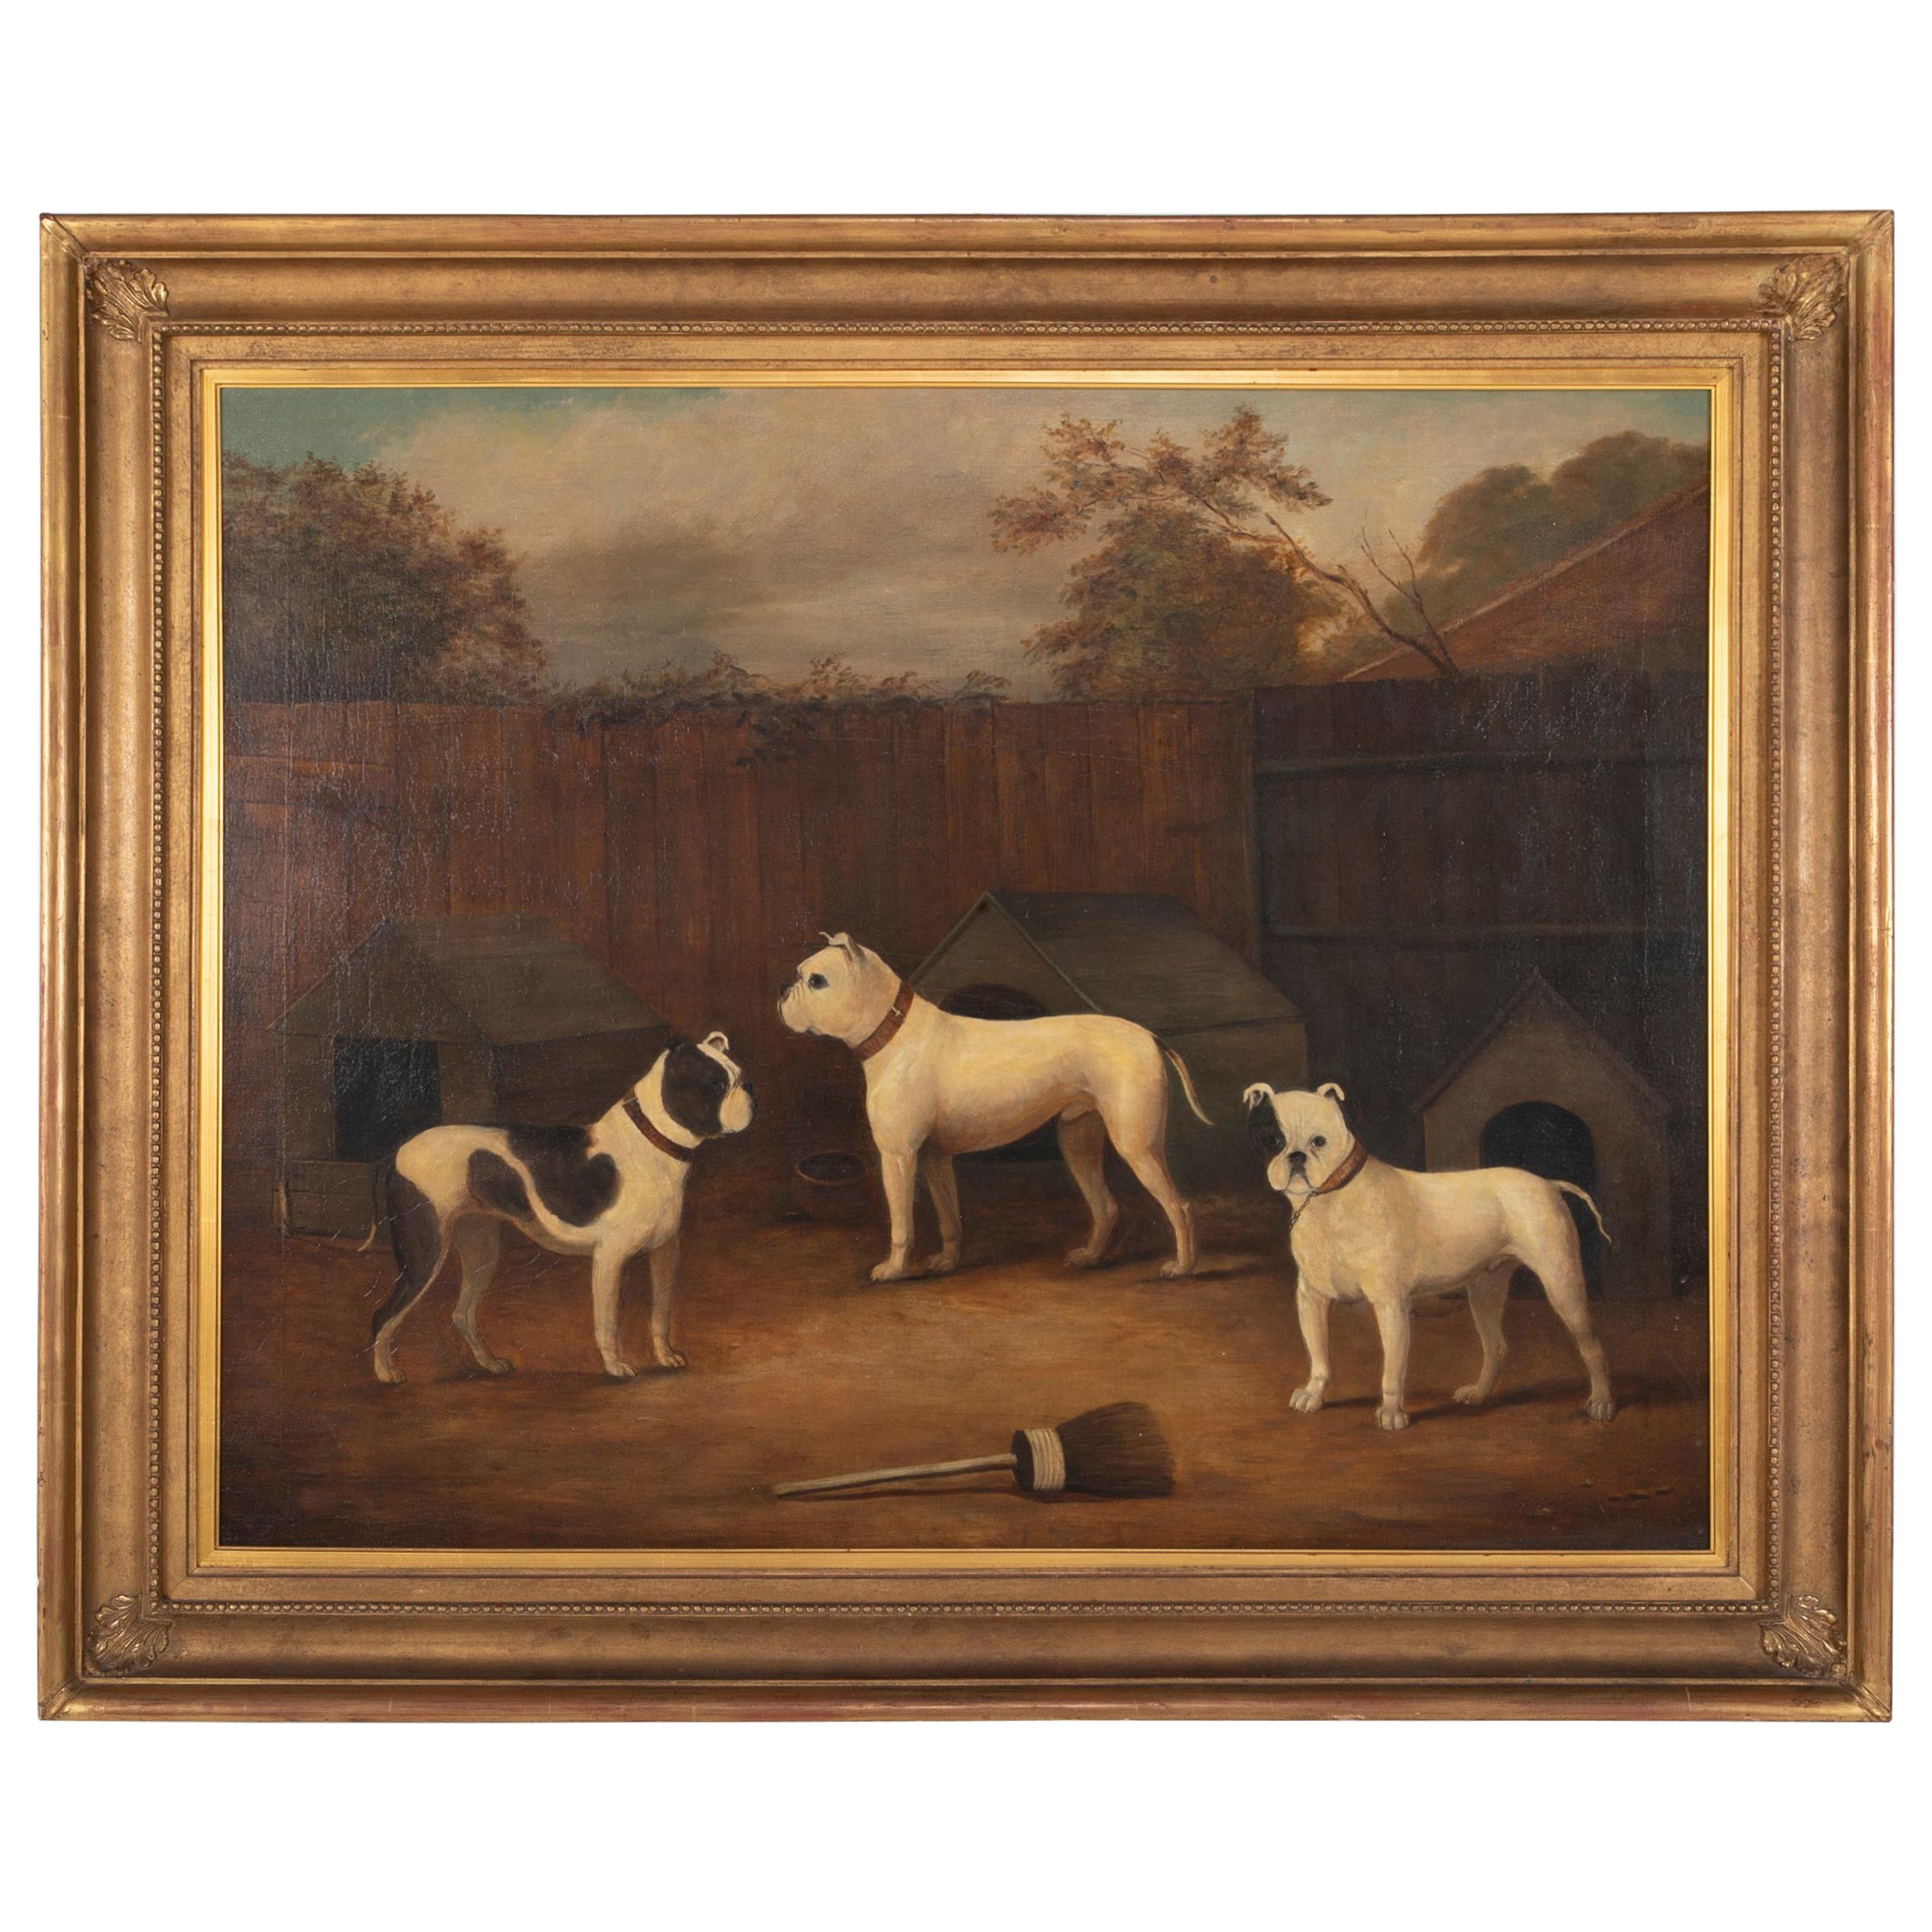 Ölgemälde mit drei Hunden, Spurenhaft, von James Ward, frühes 19. Jahrhundert